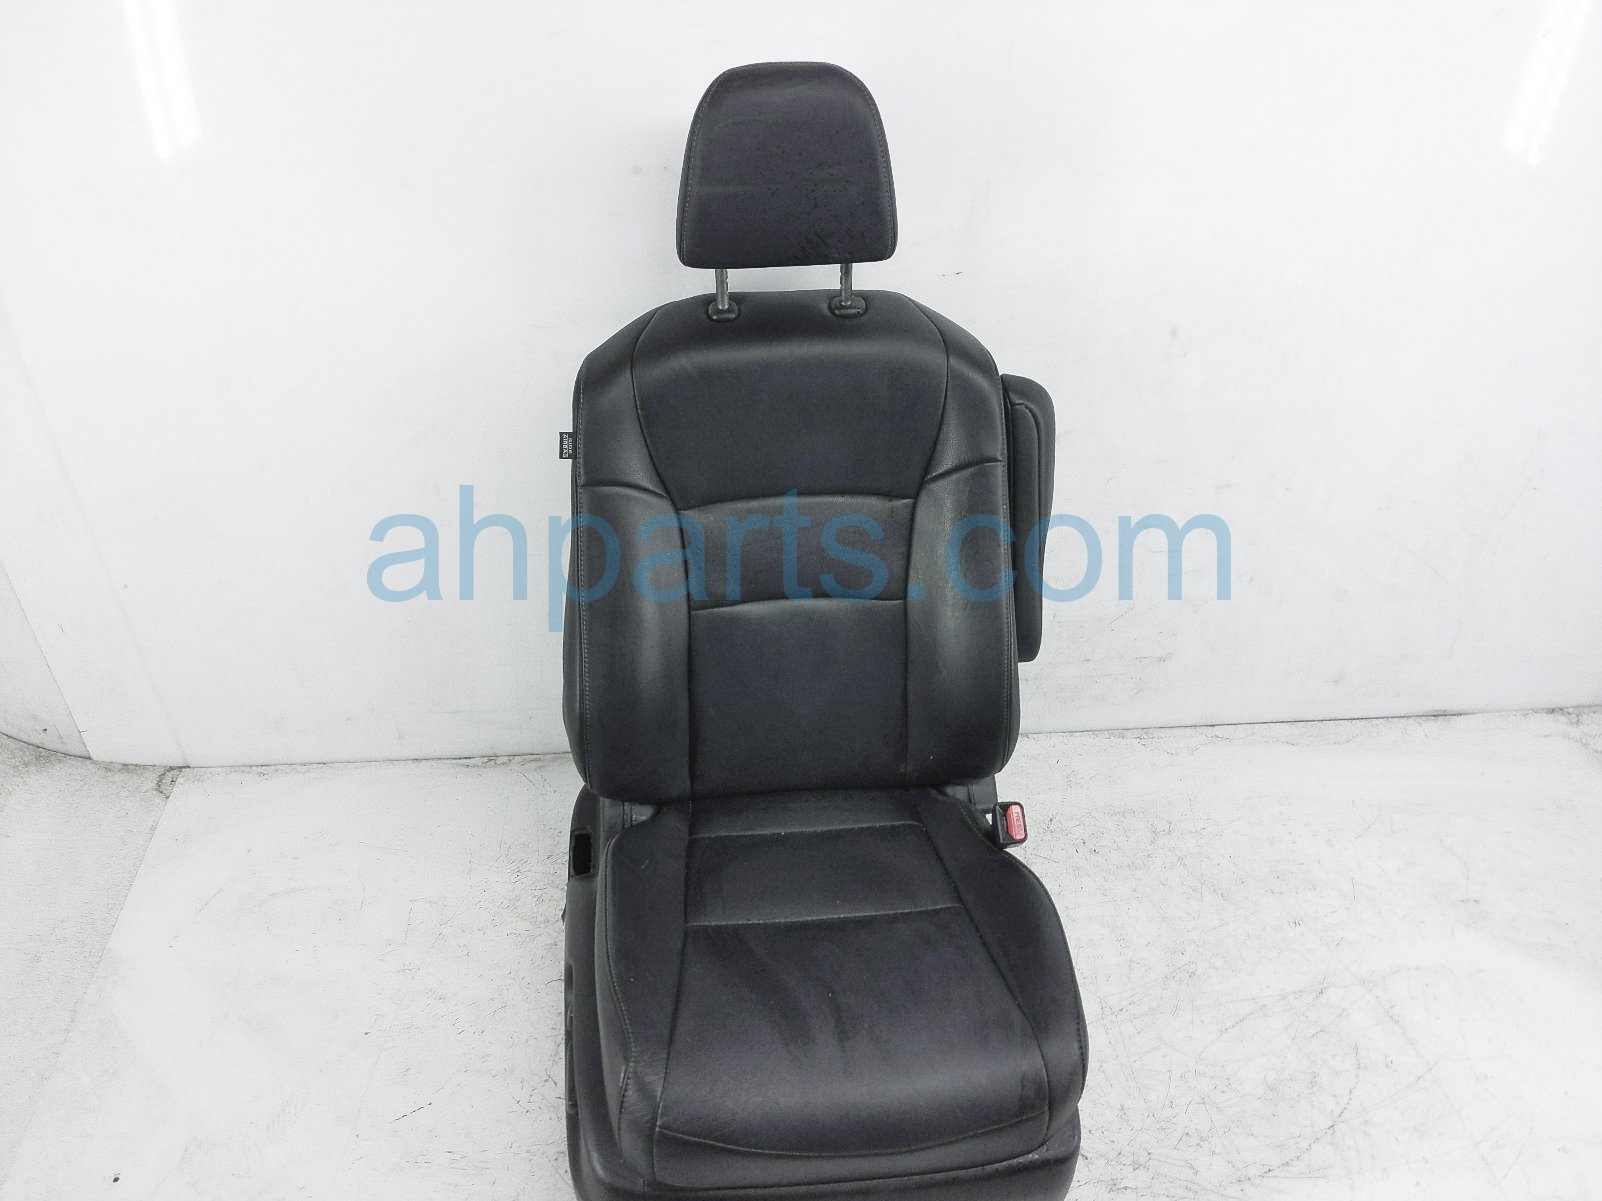 $150 Honda FR/RH SEAT - BLACK - W/O AIRBAG*